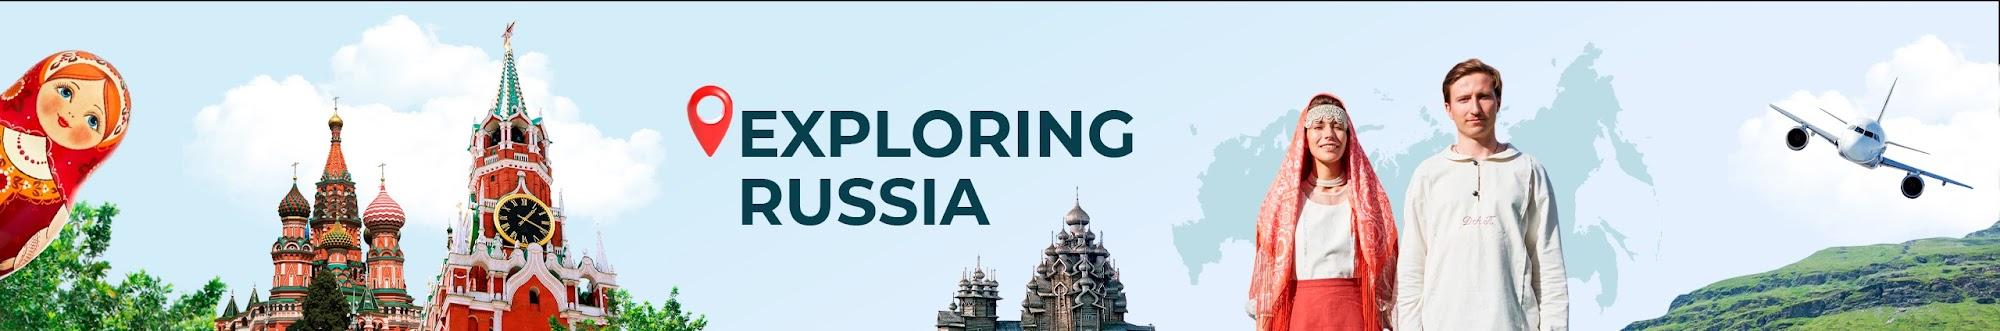 ExploringRussia